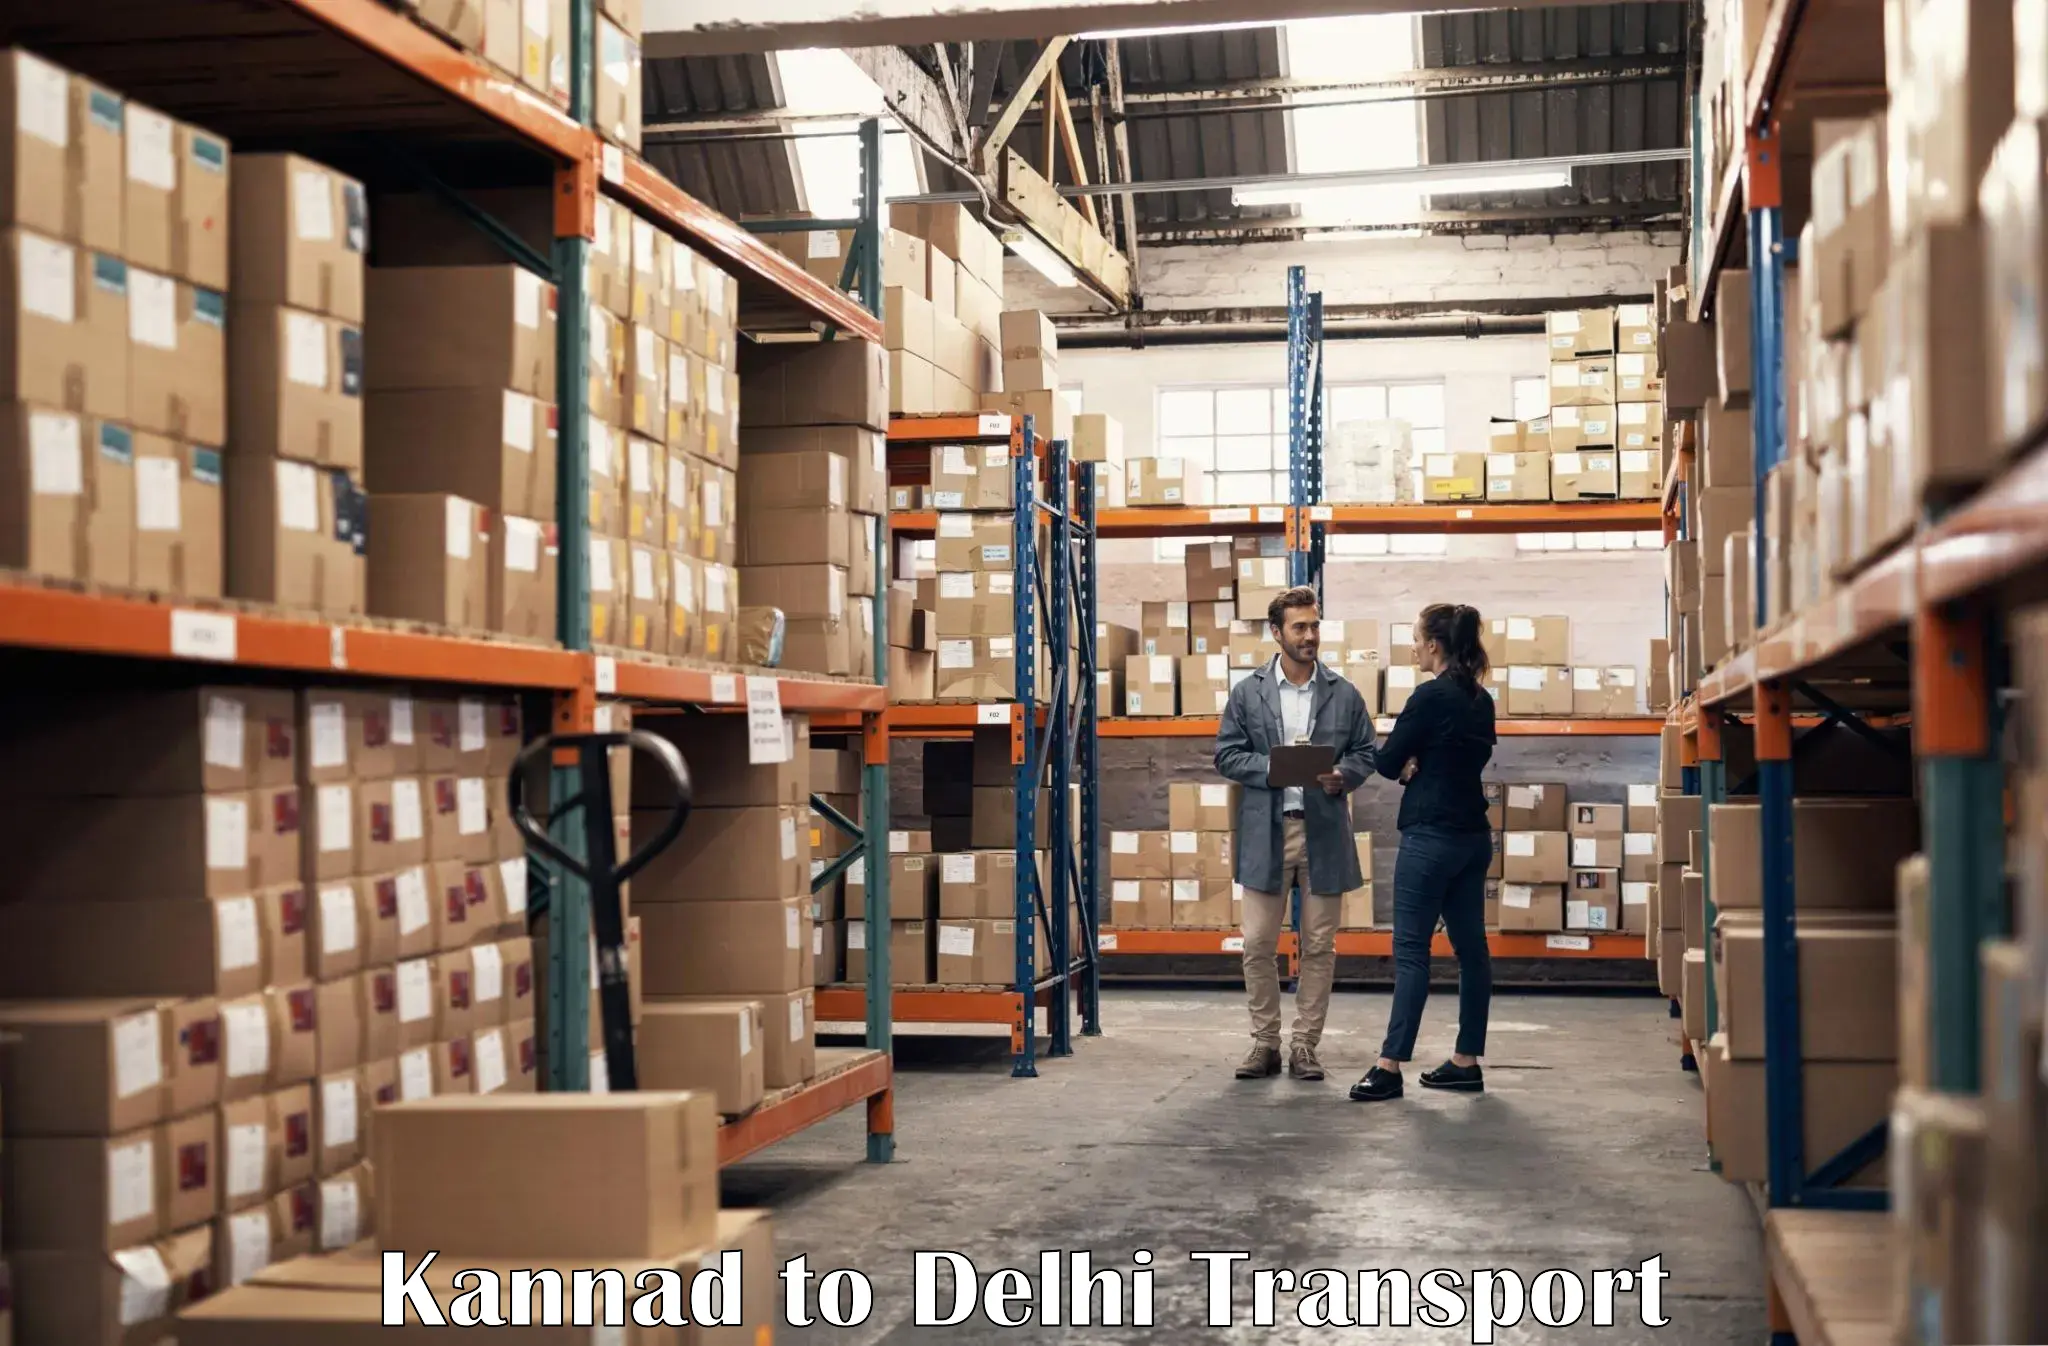 International cargo transportation services Kannad to University of Delhi